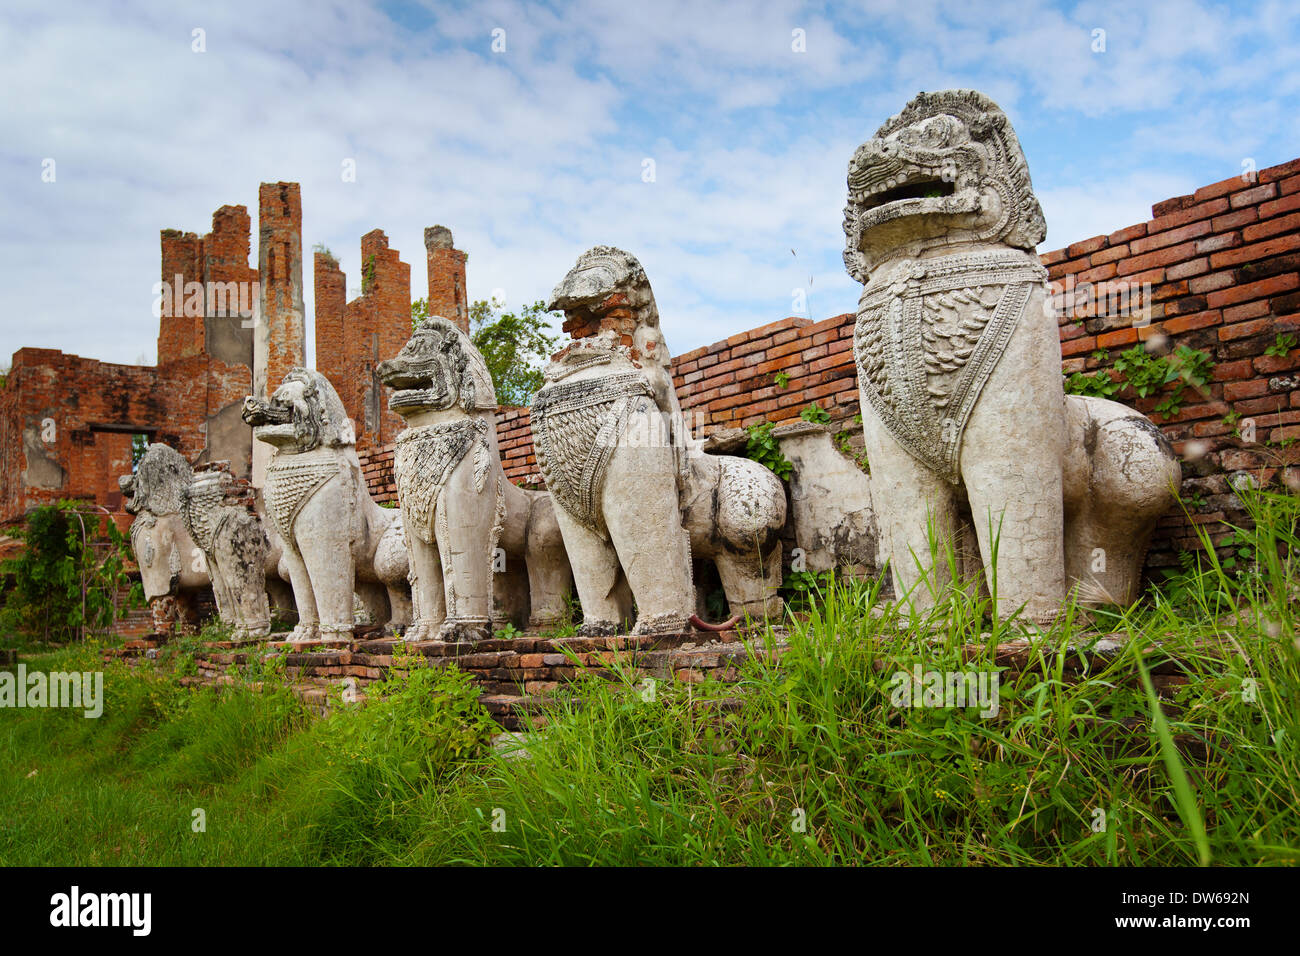 Stein-Fabelwesen wie Löwen in den Ruinen eines antiken Tempels. Thailand, Ayutthaya Stockfoto